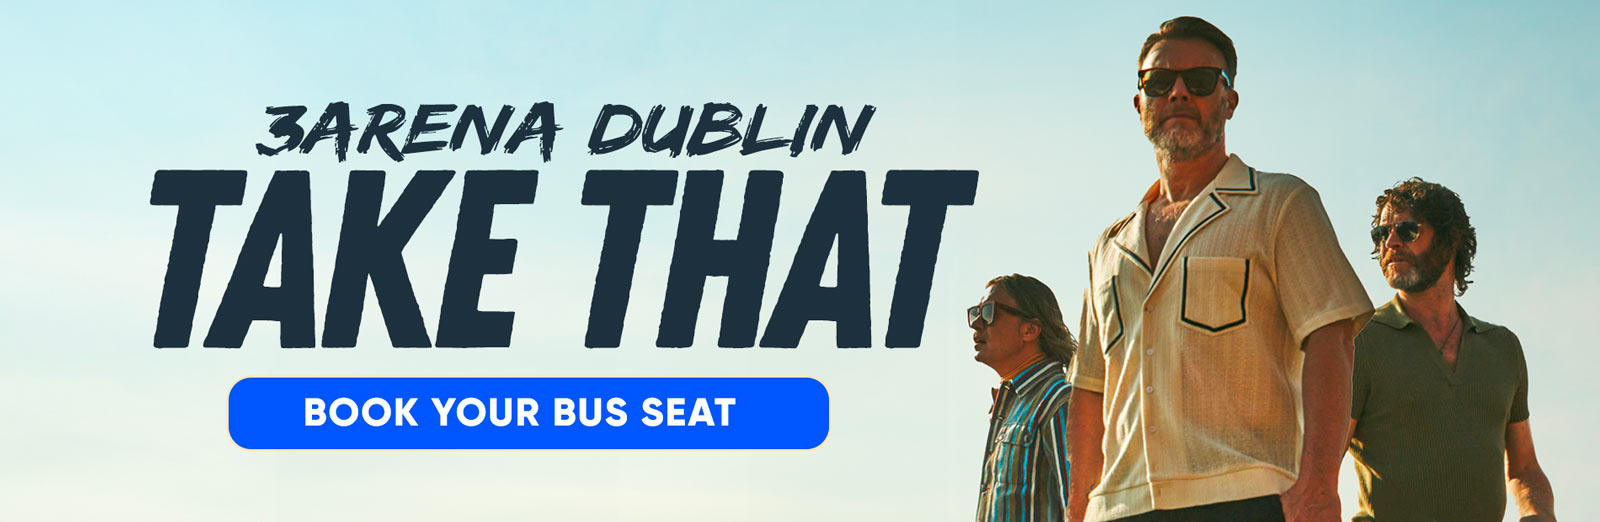 Bus to Take That 3Arena Dublin